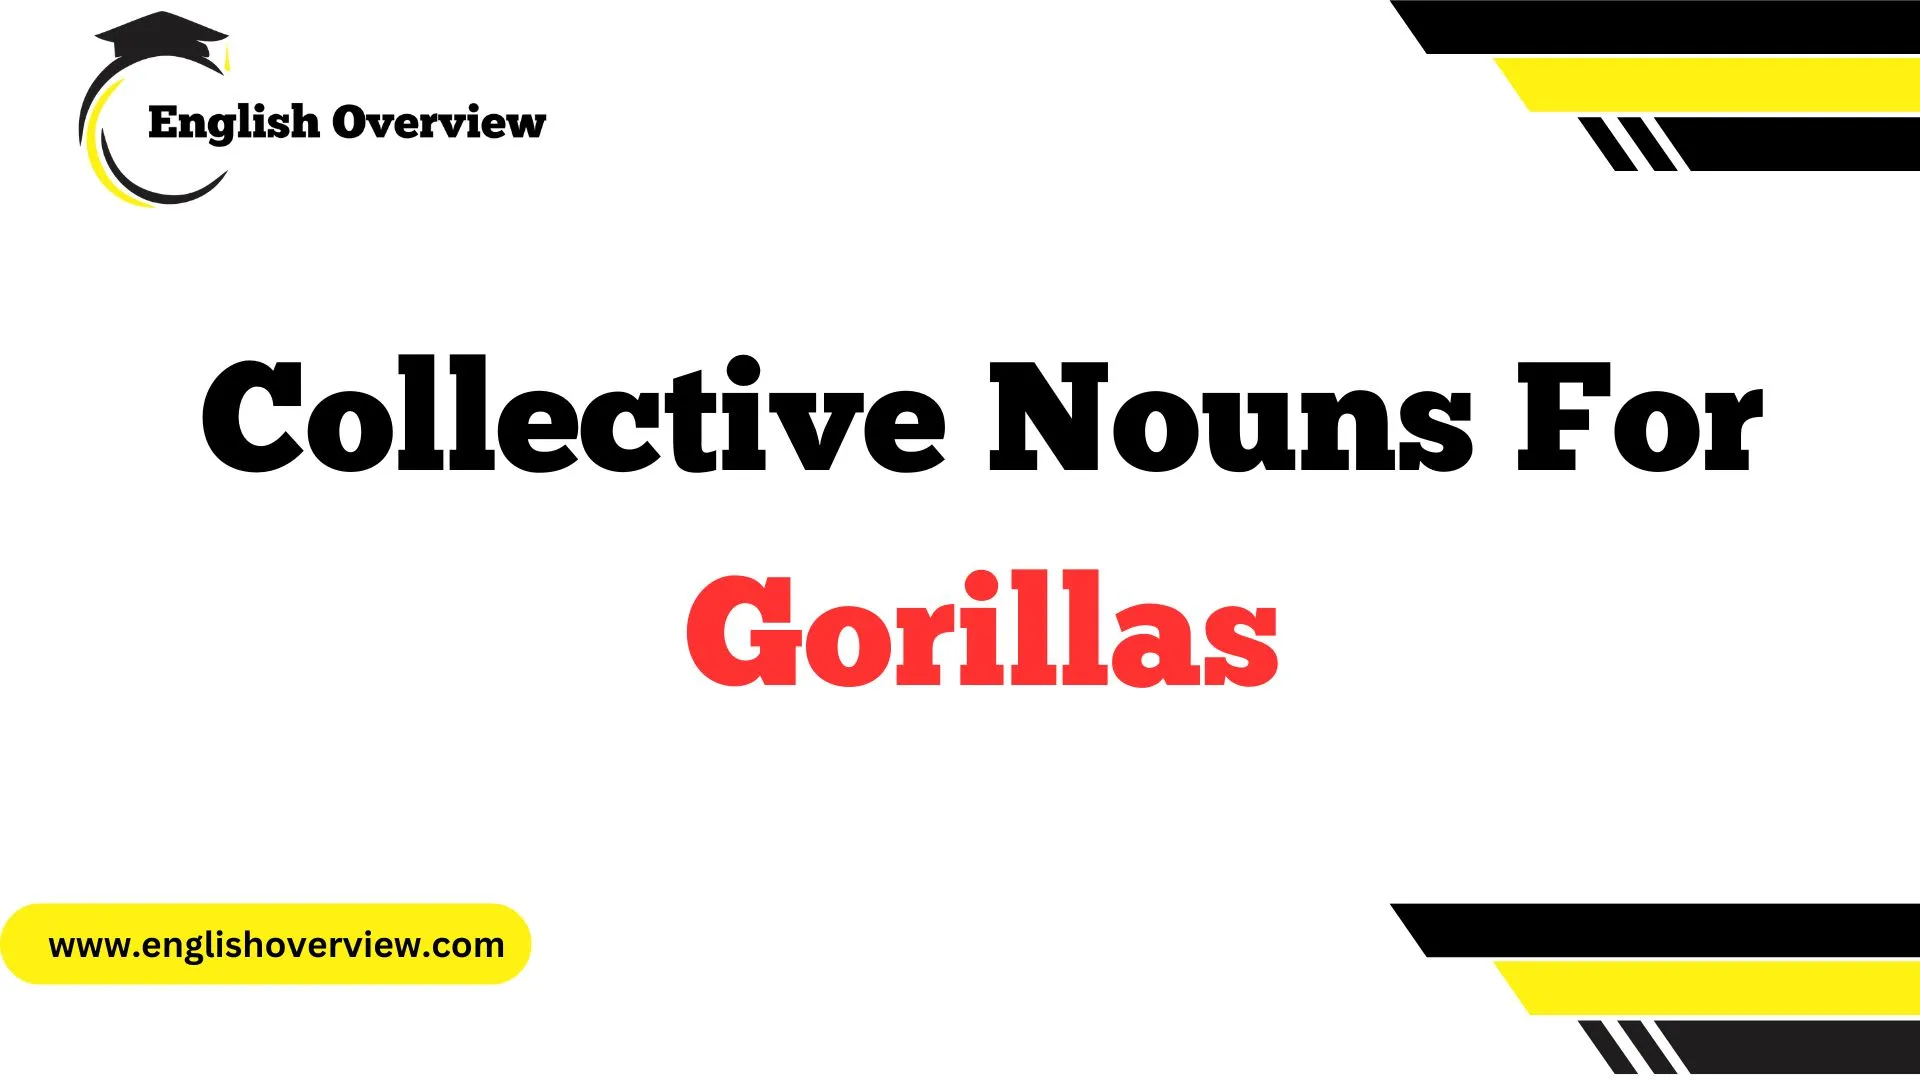 Collective Nouns For Gorillas